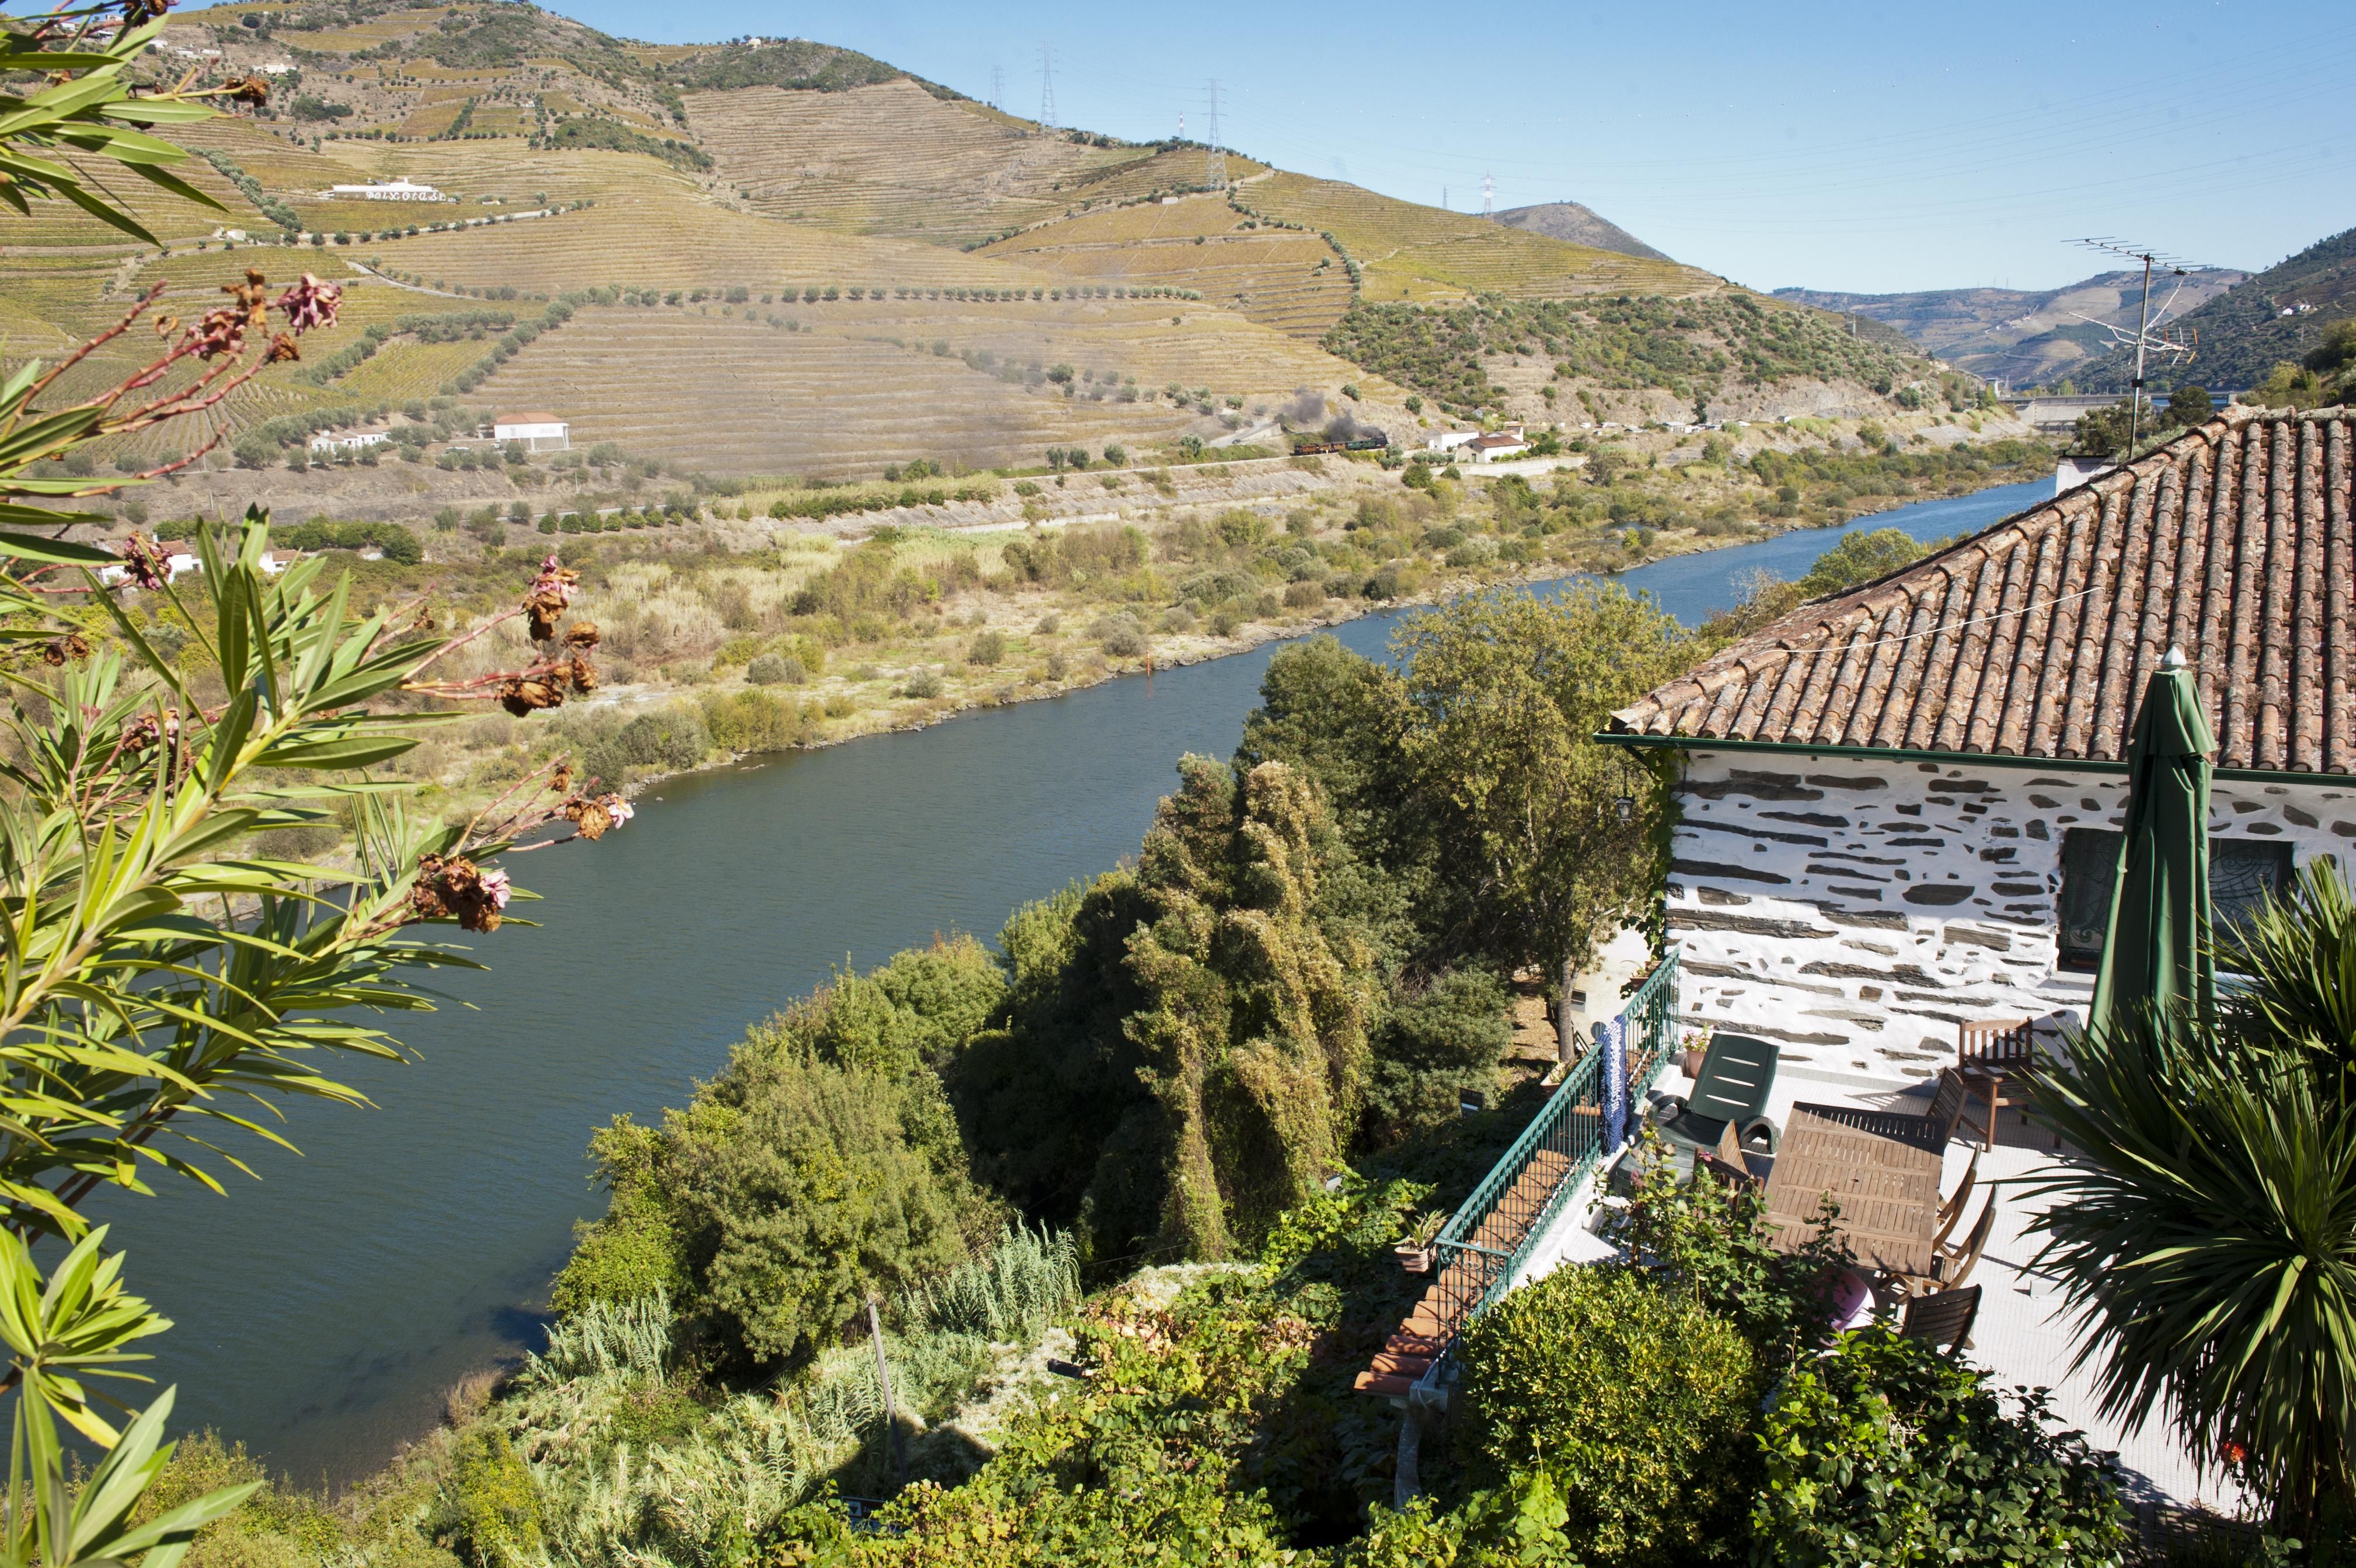 View of the Quinta de Marrocos